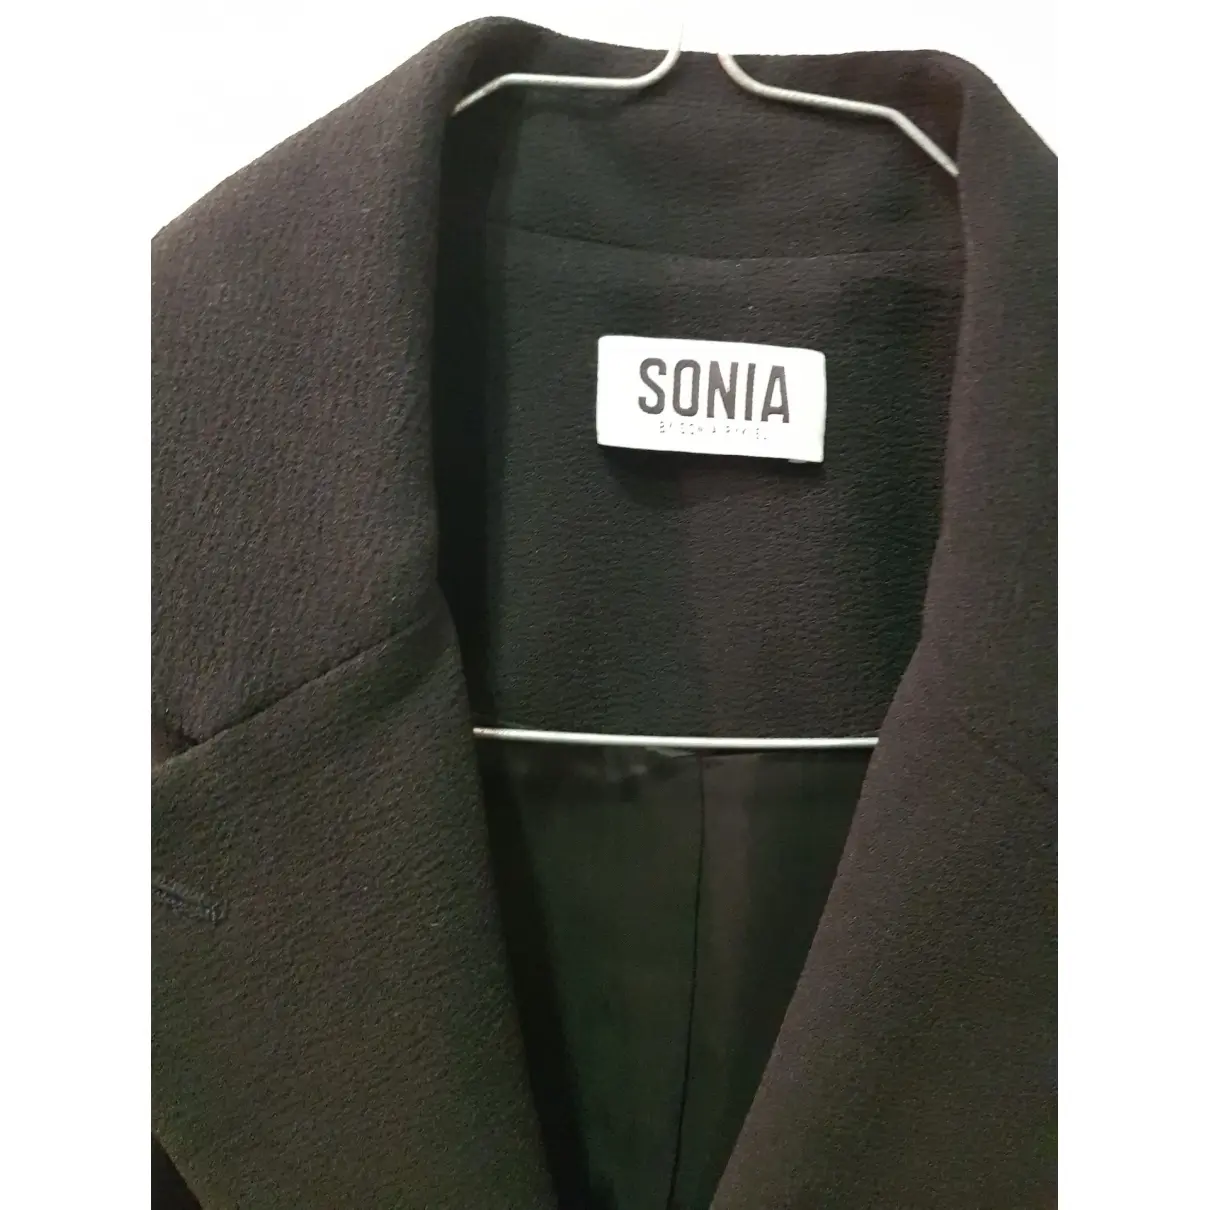 Buy Sonia by Sonia Rykiel Blazer online